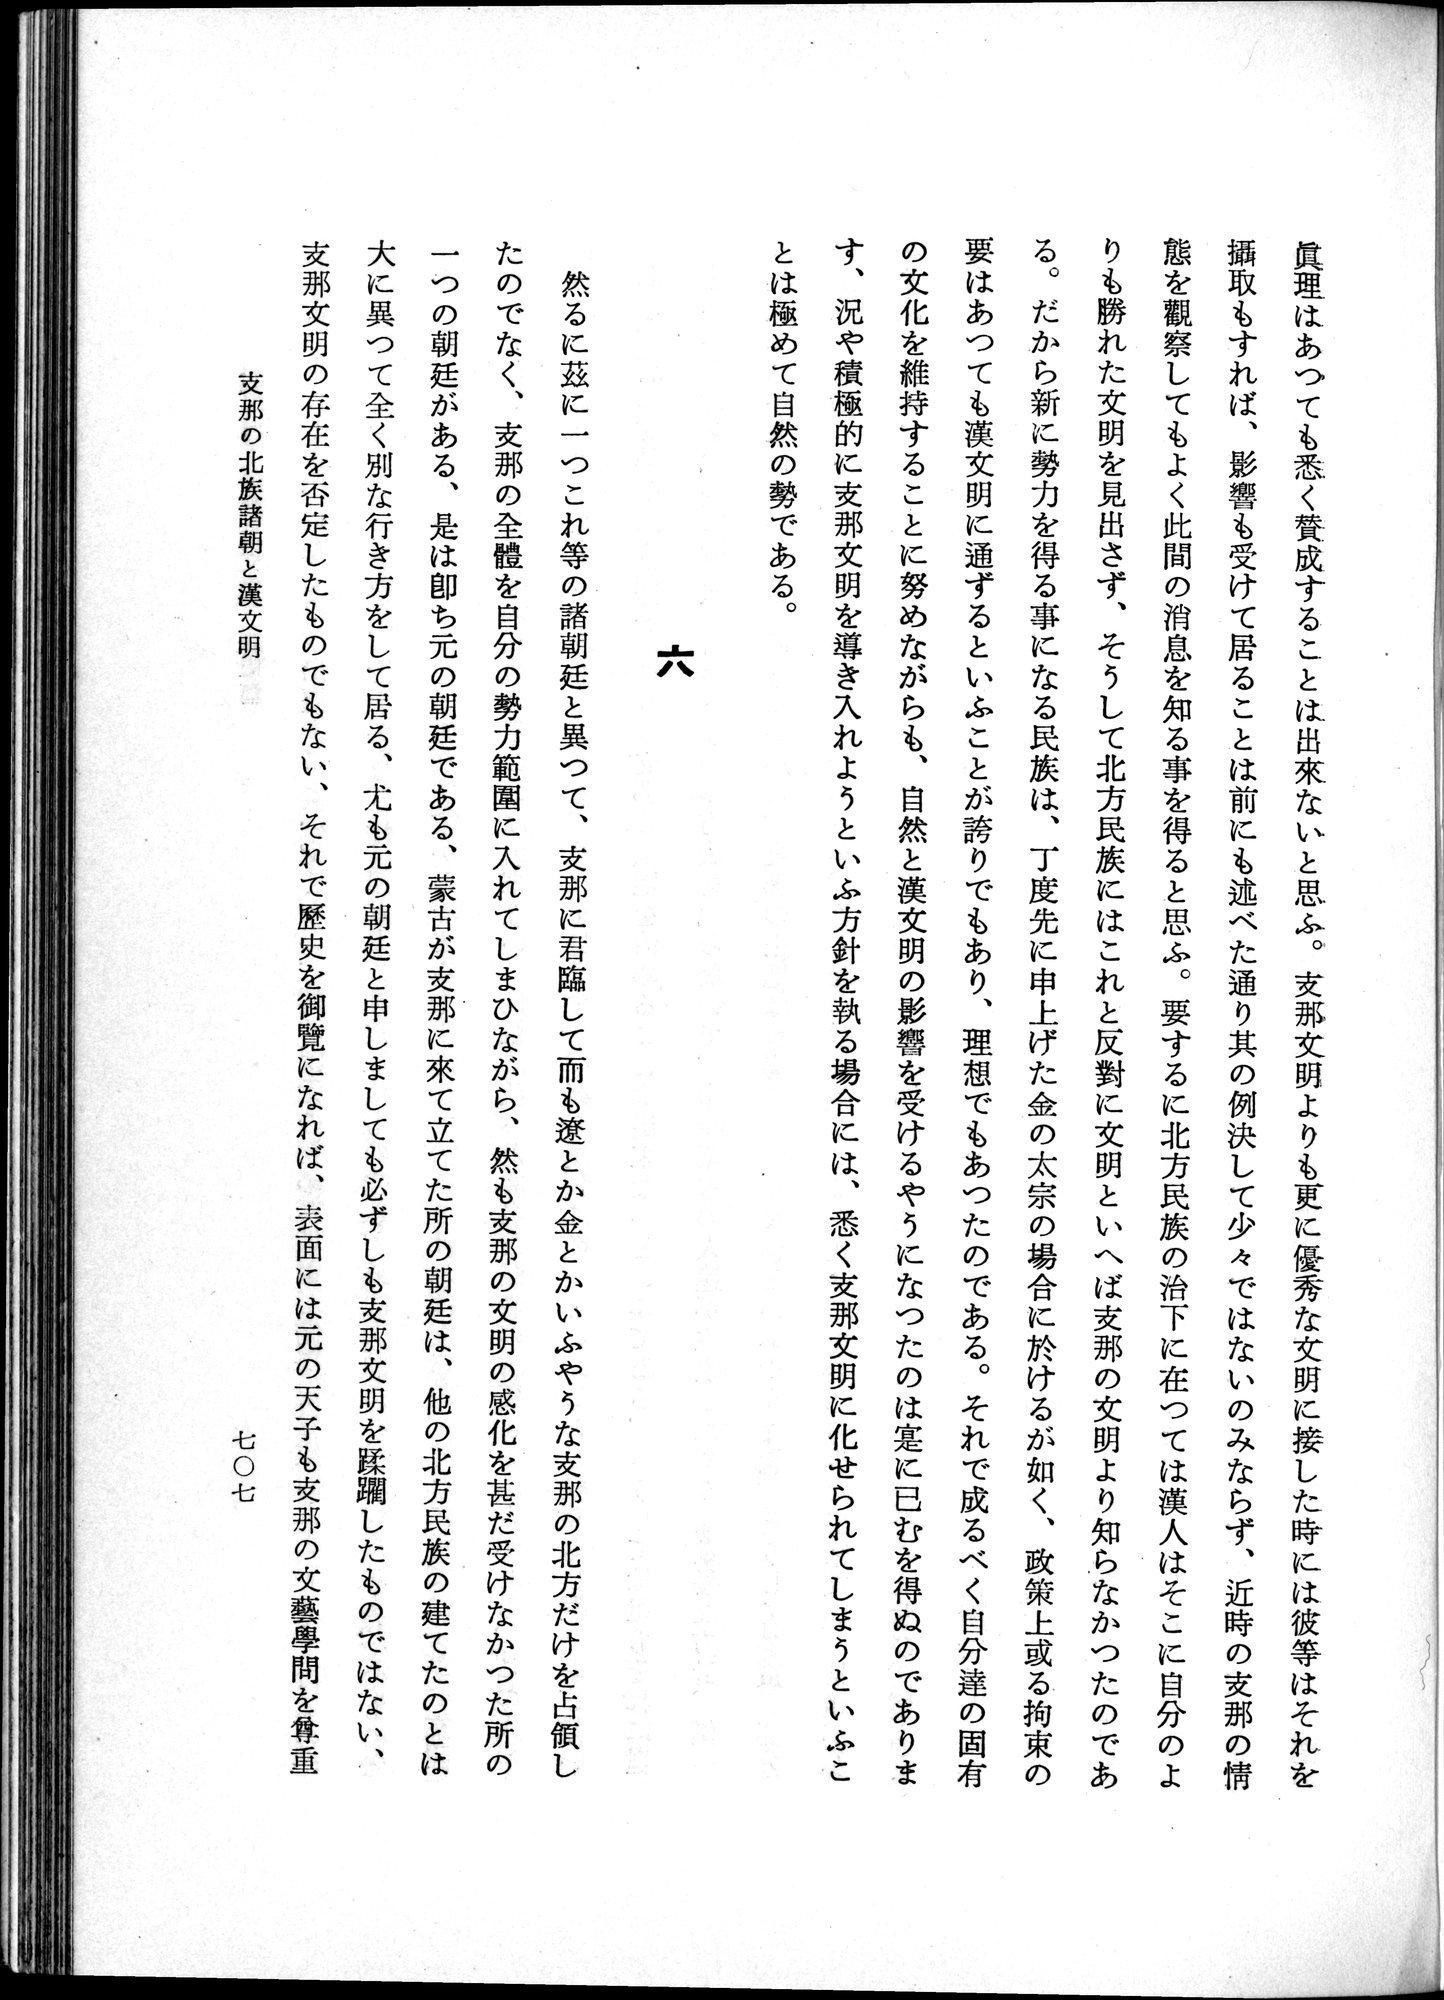 羽田博士史学論文集 : vol.1 / Page 745 (Grayscale High Resolution Image)